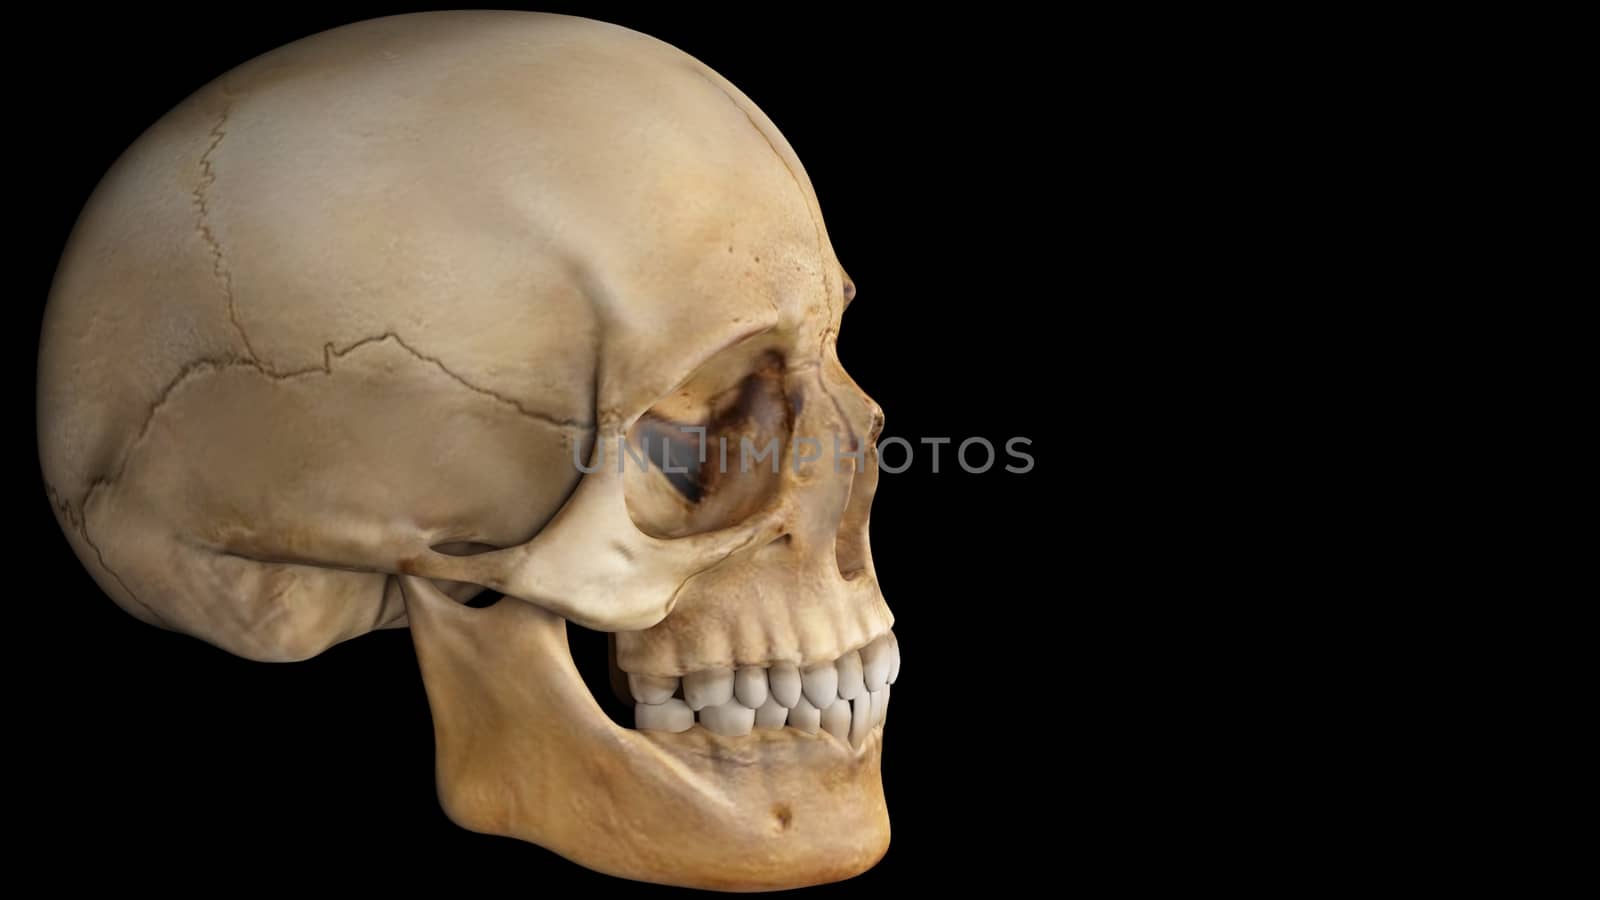 artifical human skull on black background, skull